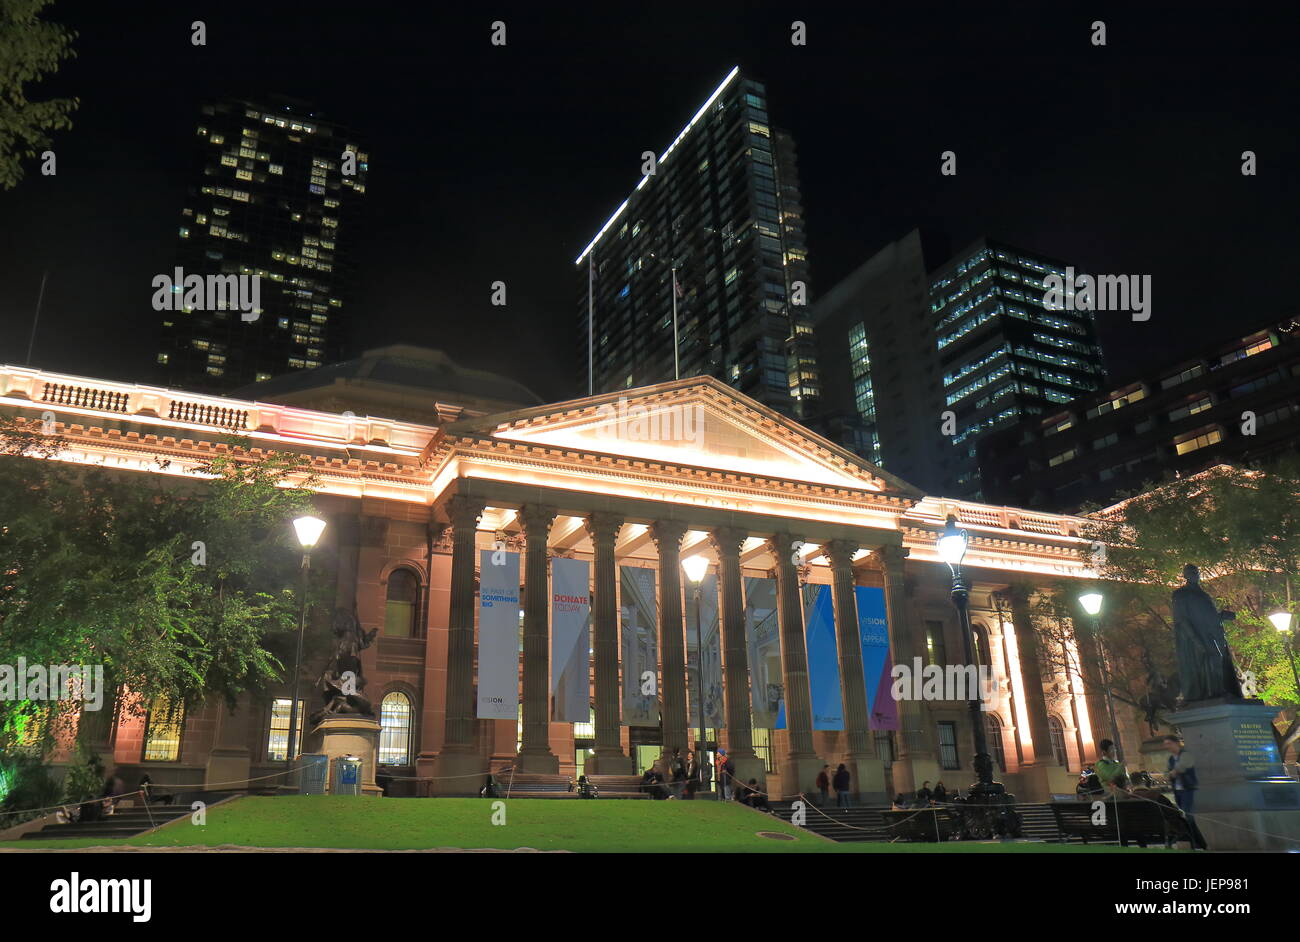 L'architecture historique de la bibliothèque de Melbourne Australie Banque D'Images